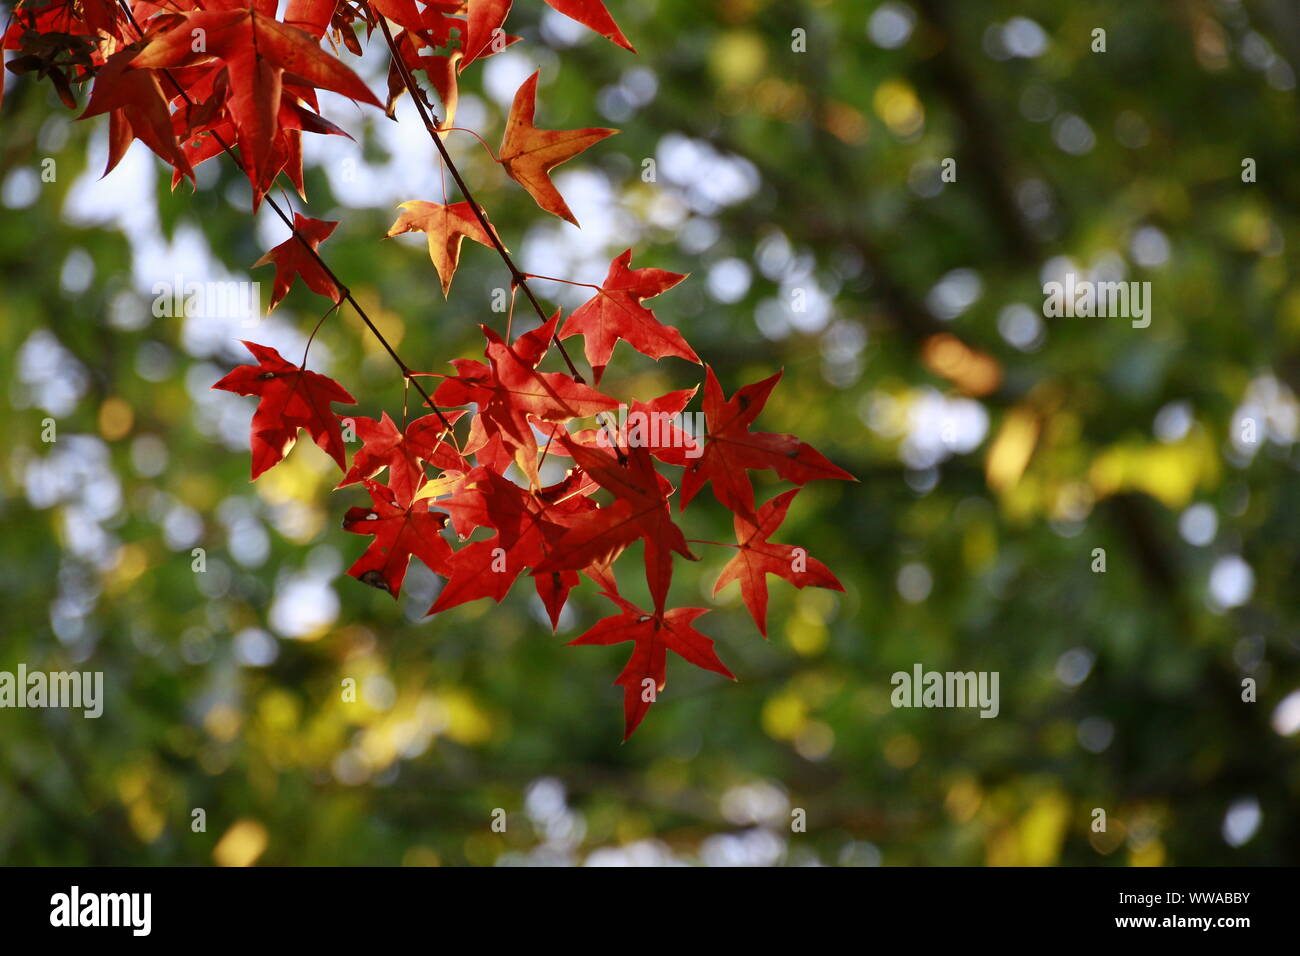 'Autumn the year's last, Loveliest smile.' Stock Photo